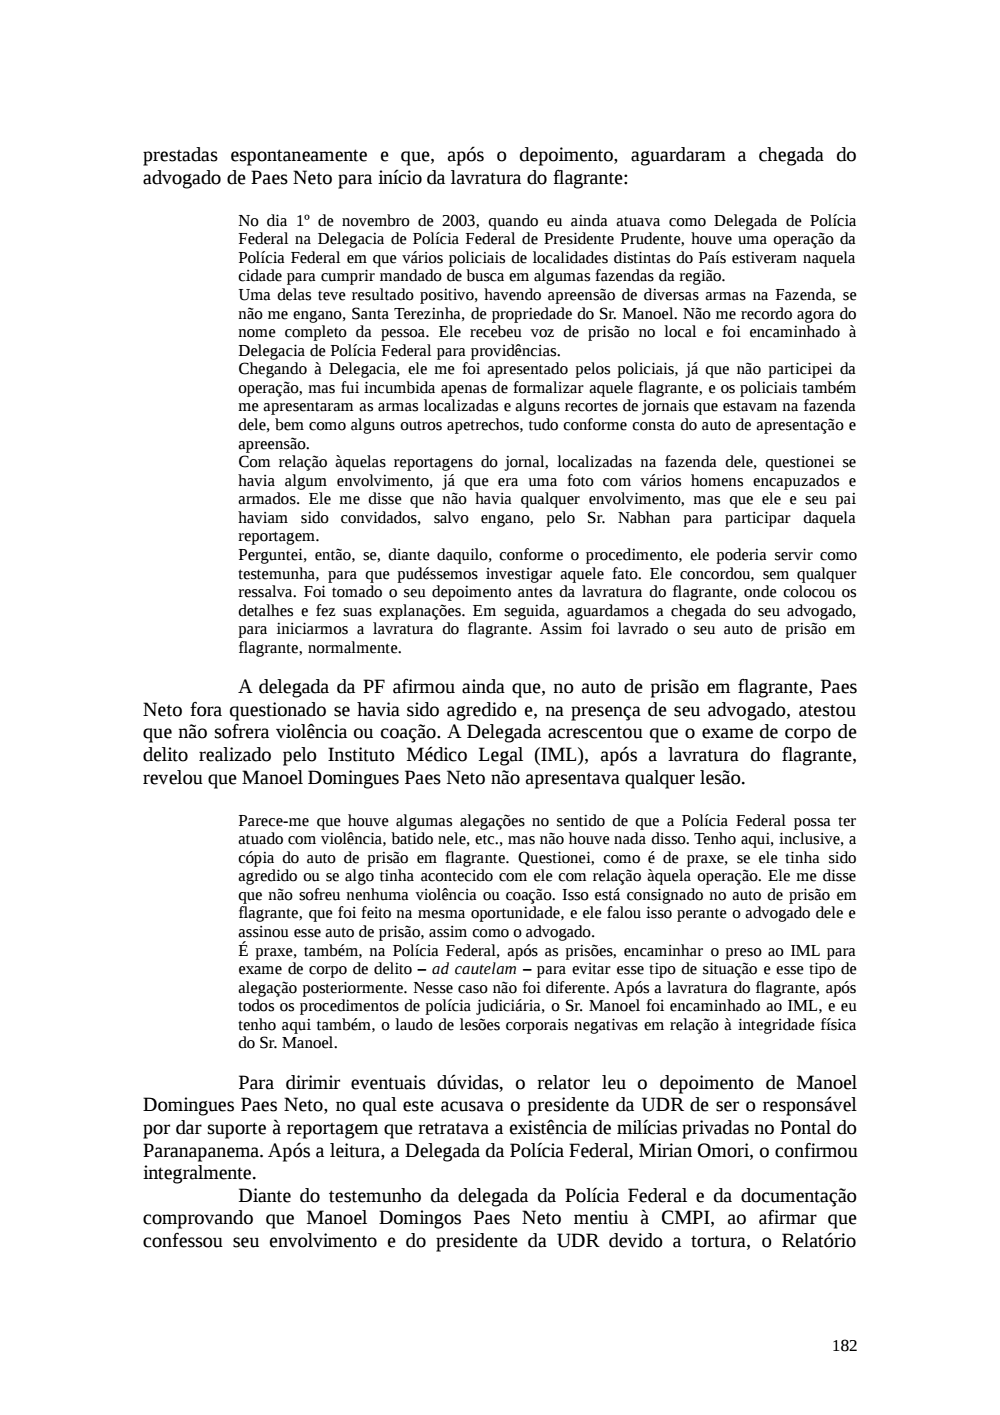 Page 182 from Relatório final da comissão